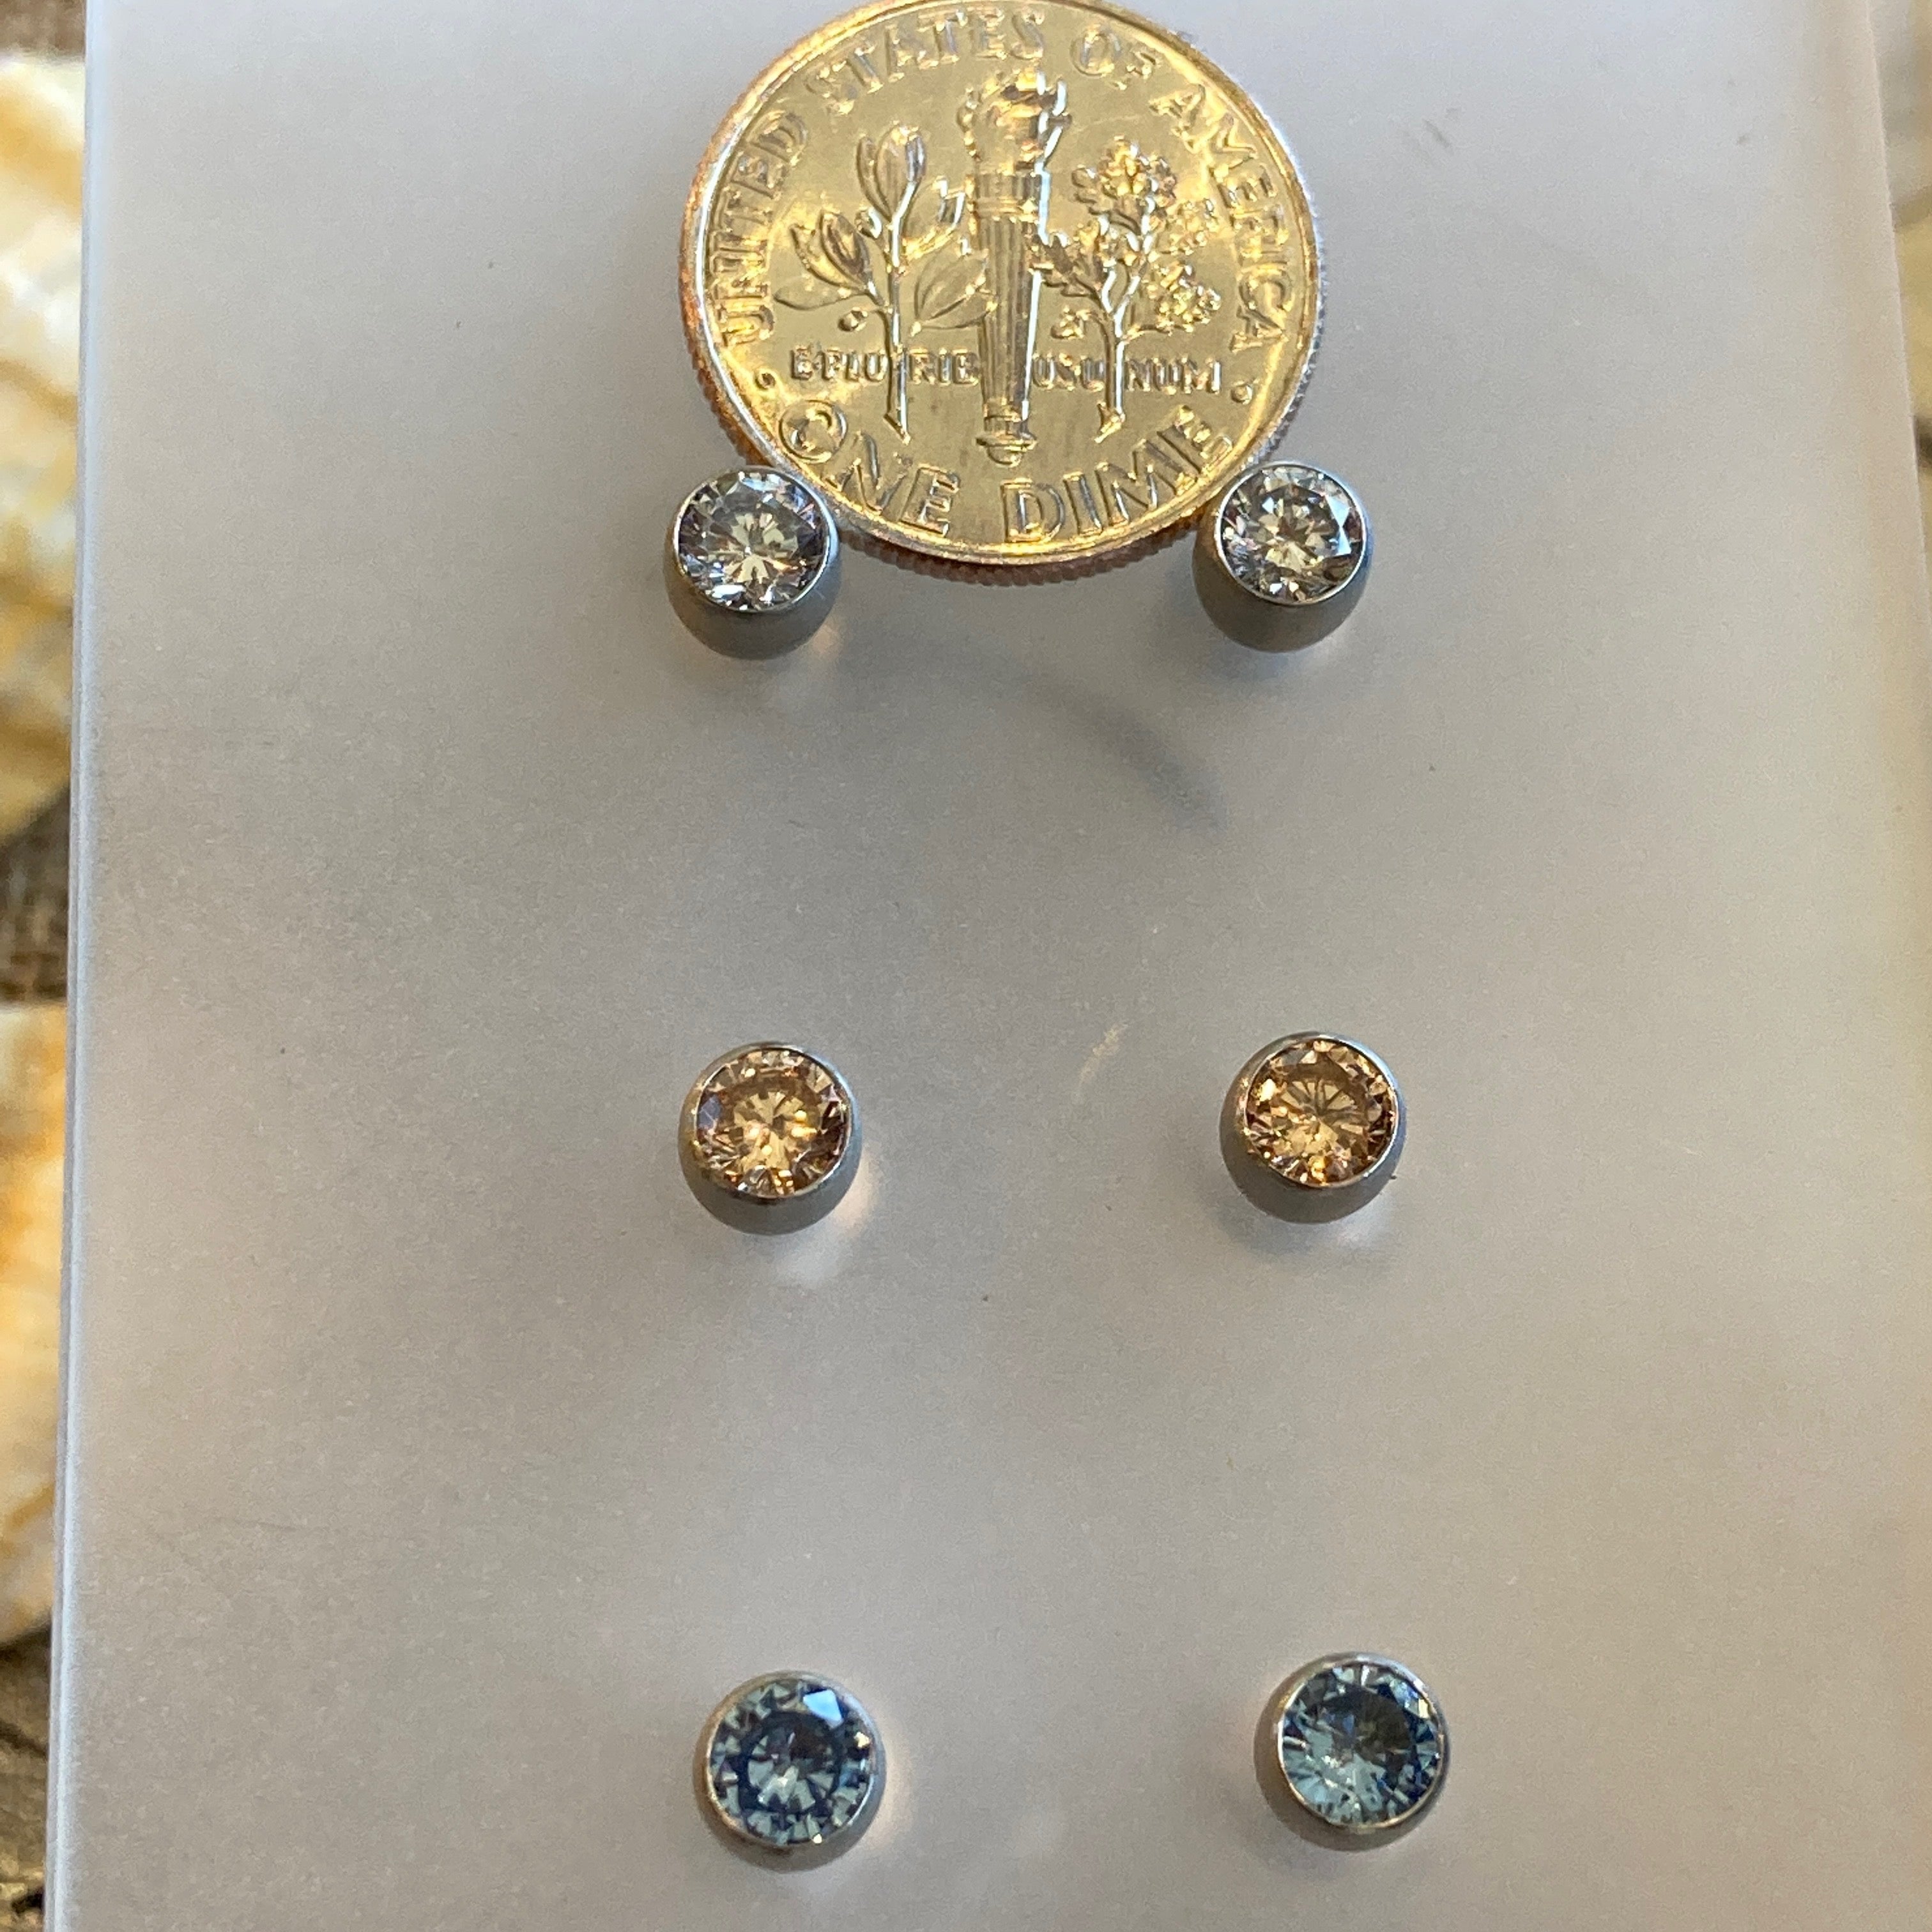 4mm Cubic Zirconium Steel Earrings